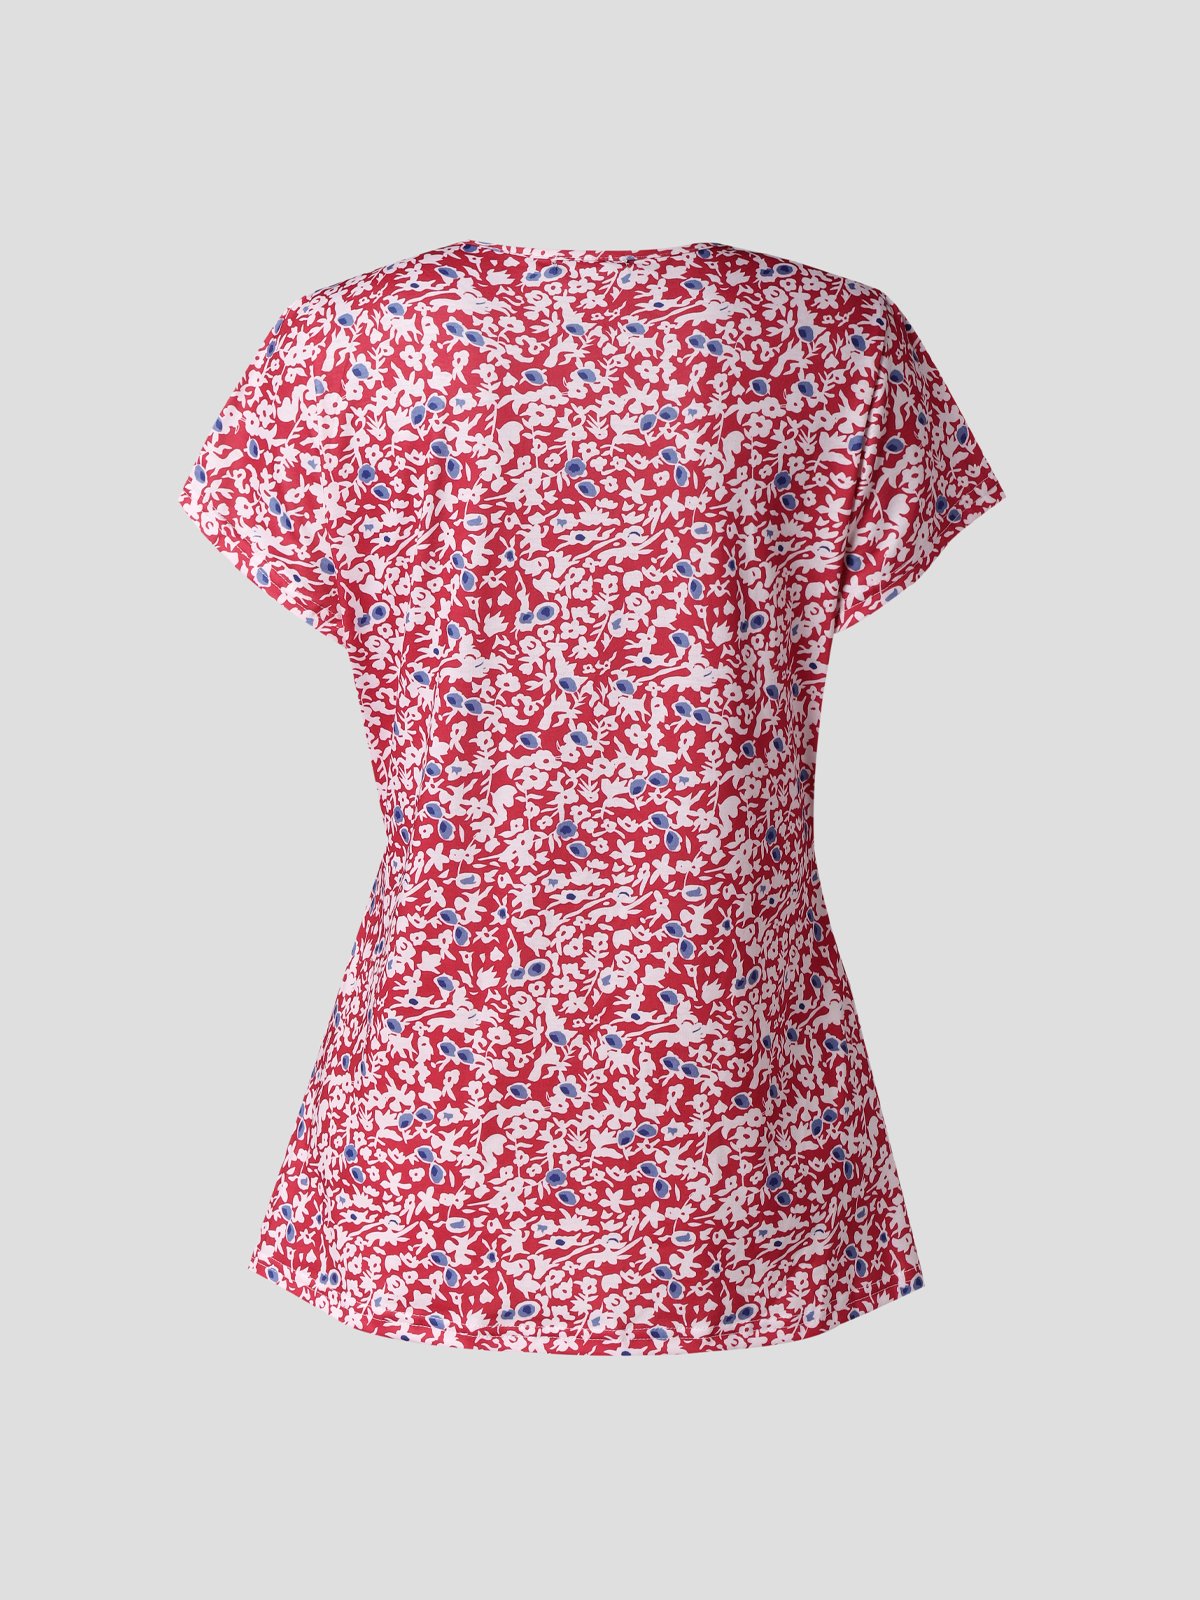 T-shirt Femme Décontracté Floral Printemps Léger Micro-élasticité Quotidien Jersey Regular H-Line